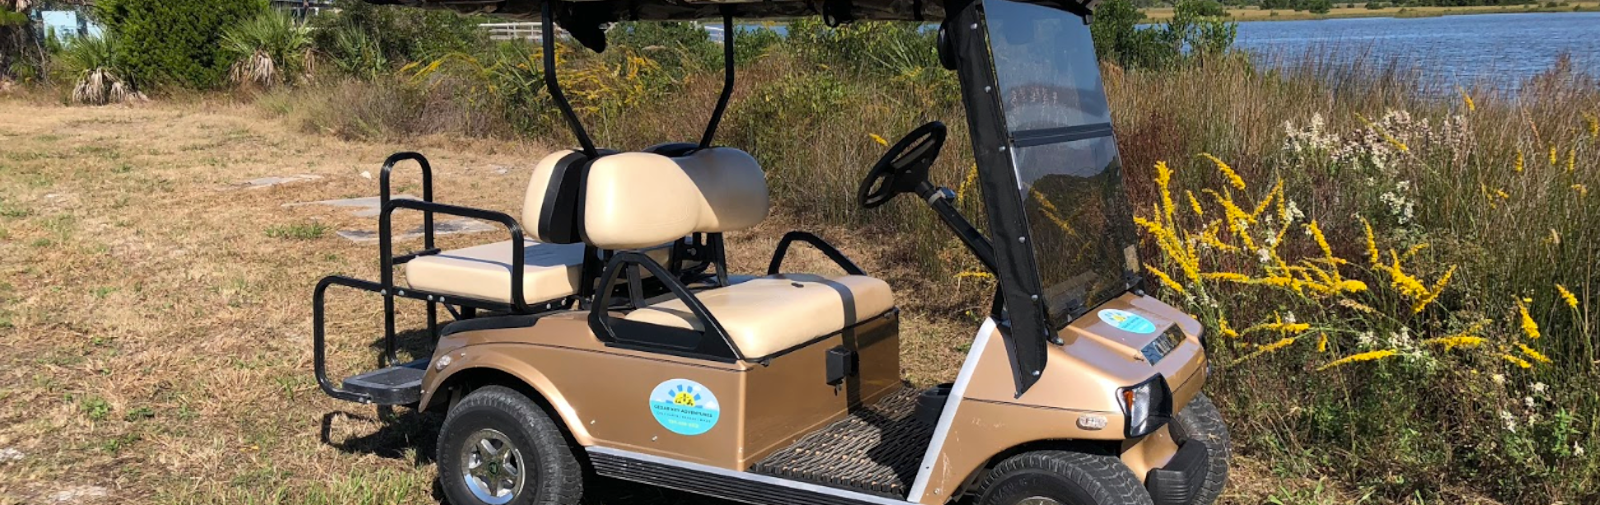 Golf cart.